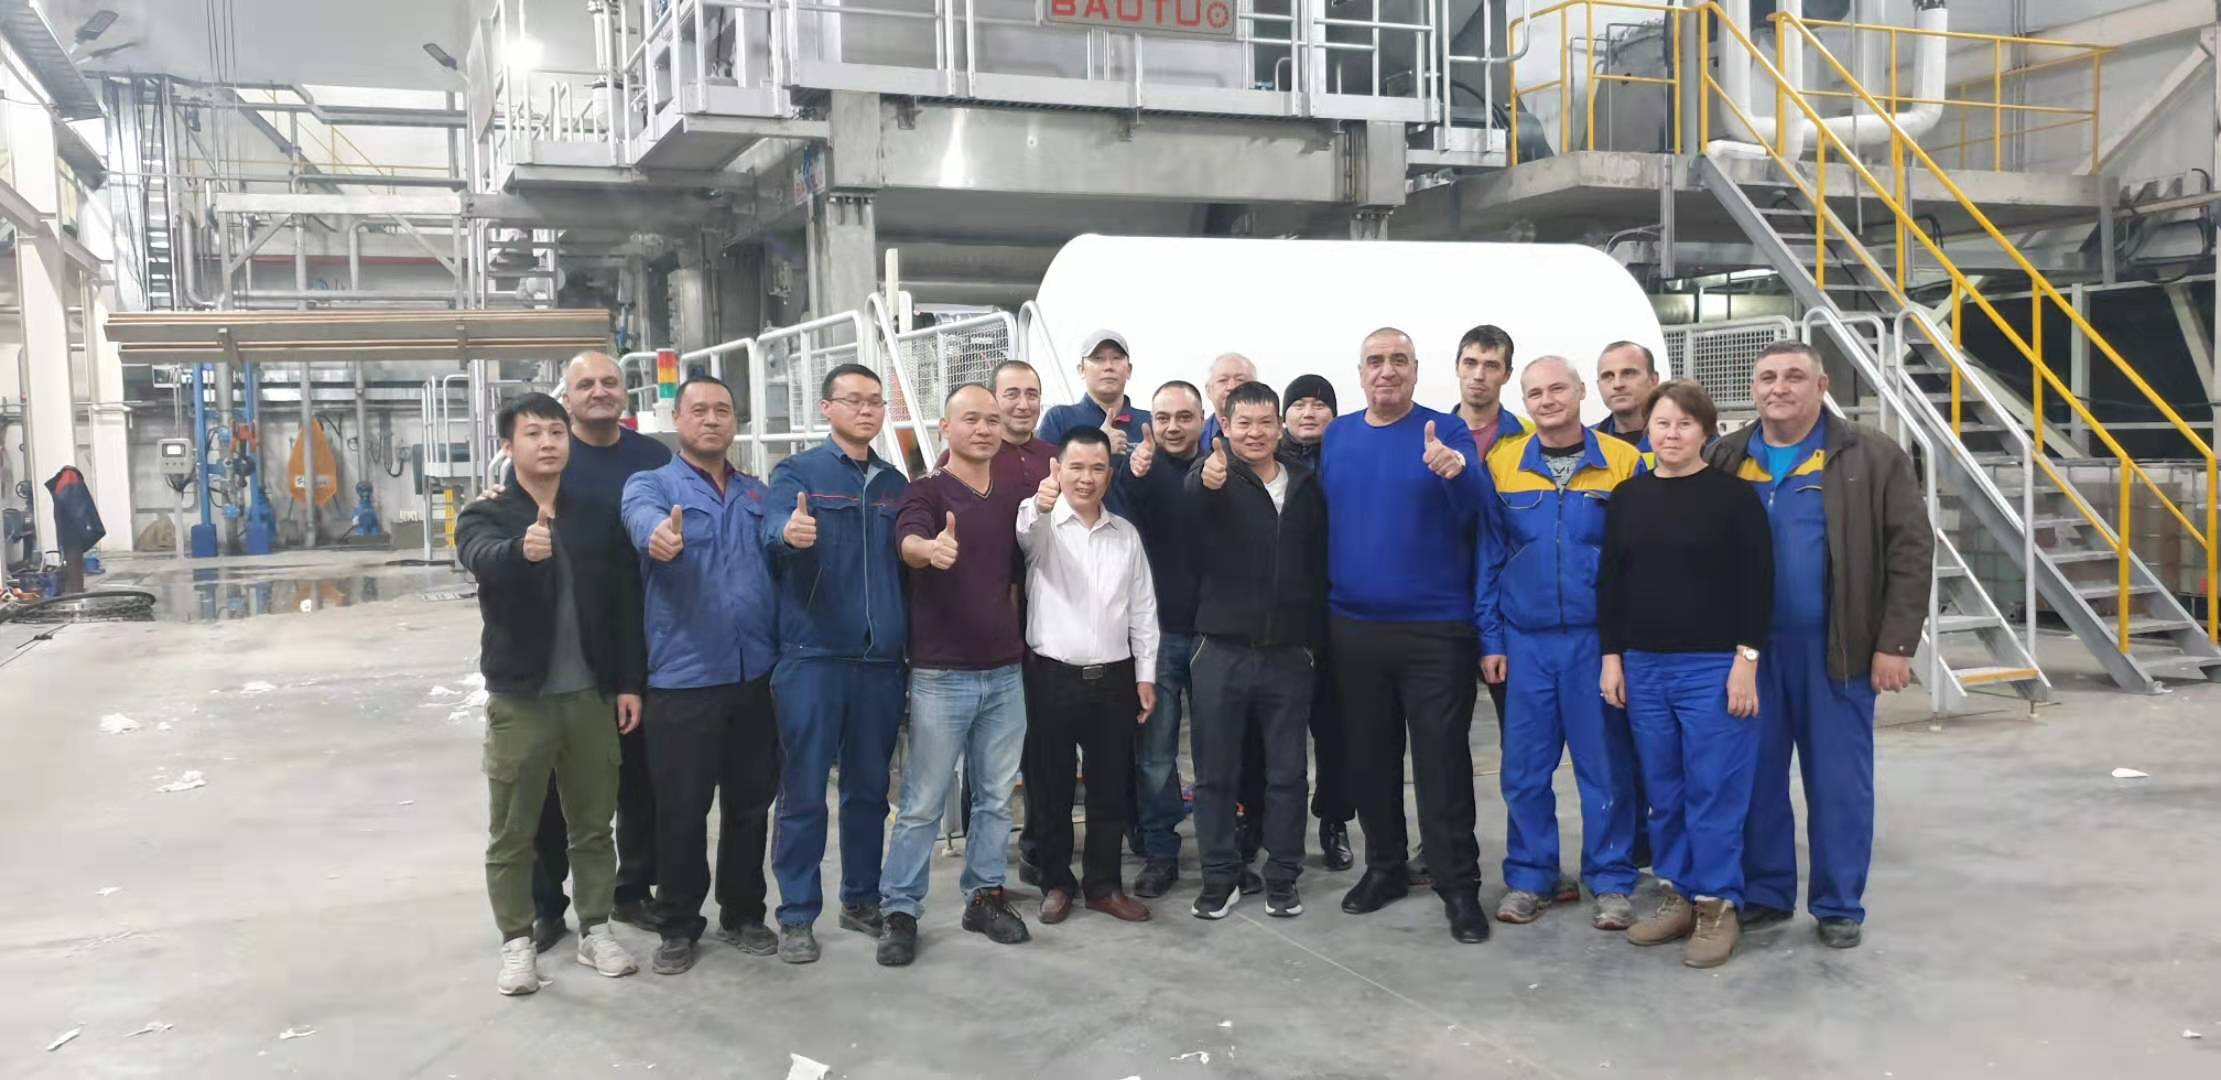 Предприятие Baosuo получает еще одно новое достижение - бумажная машина Baotuo успешно запущена в производство в Казахстане